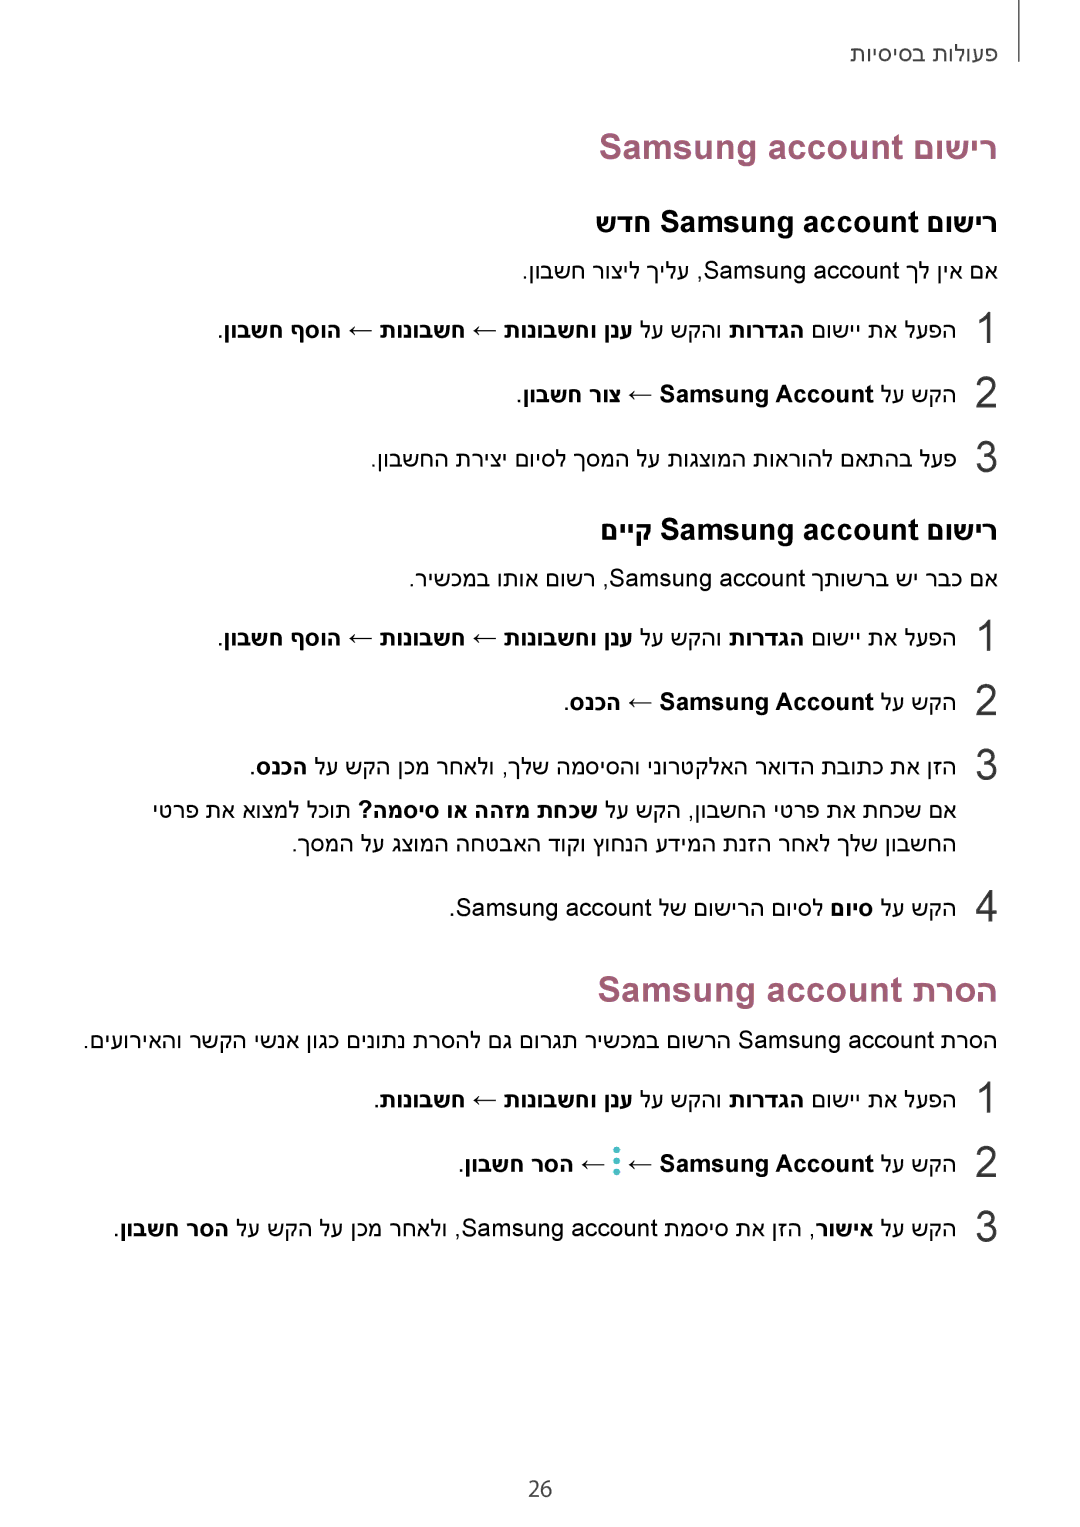 Samsung SM-A520FZKAILO, SM-A720FZDAILO Samsung account תרסה, שדח Samsung account םושיר, םייק Samsung account םושיר 